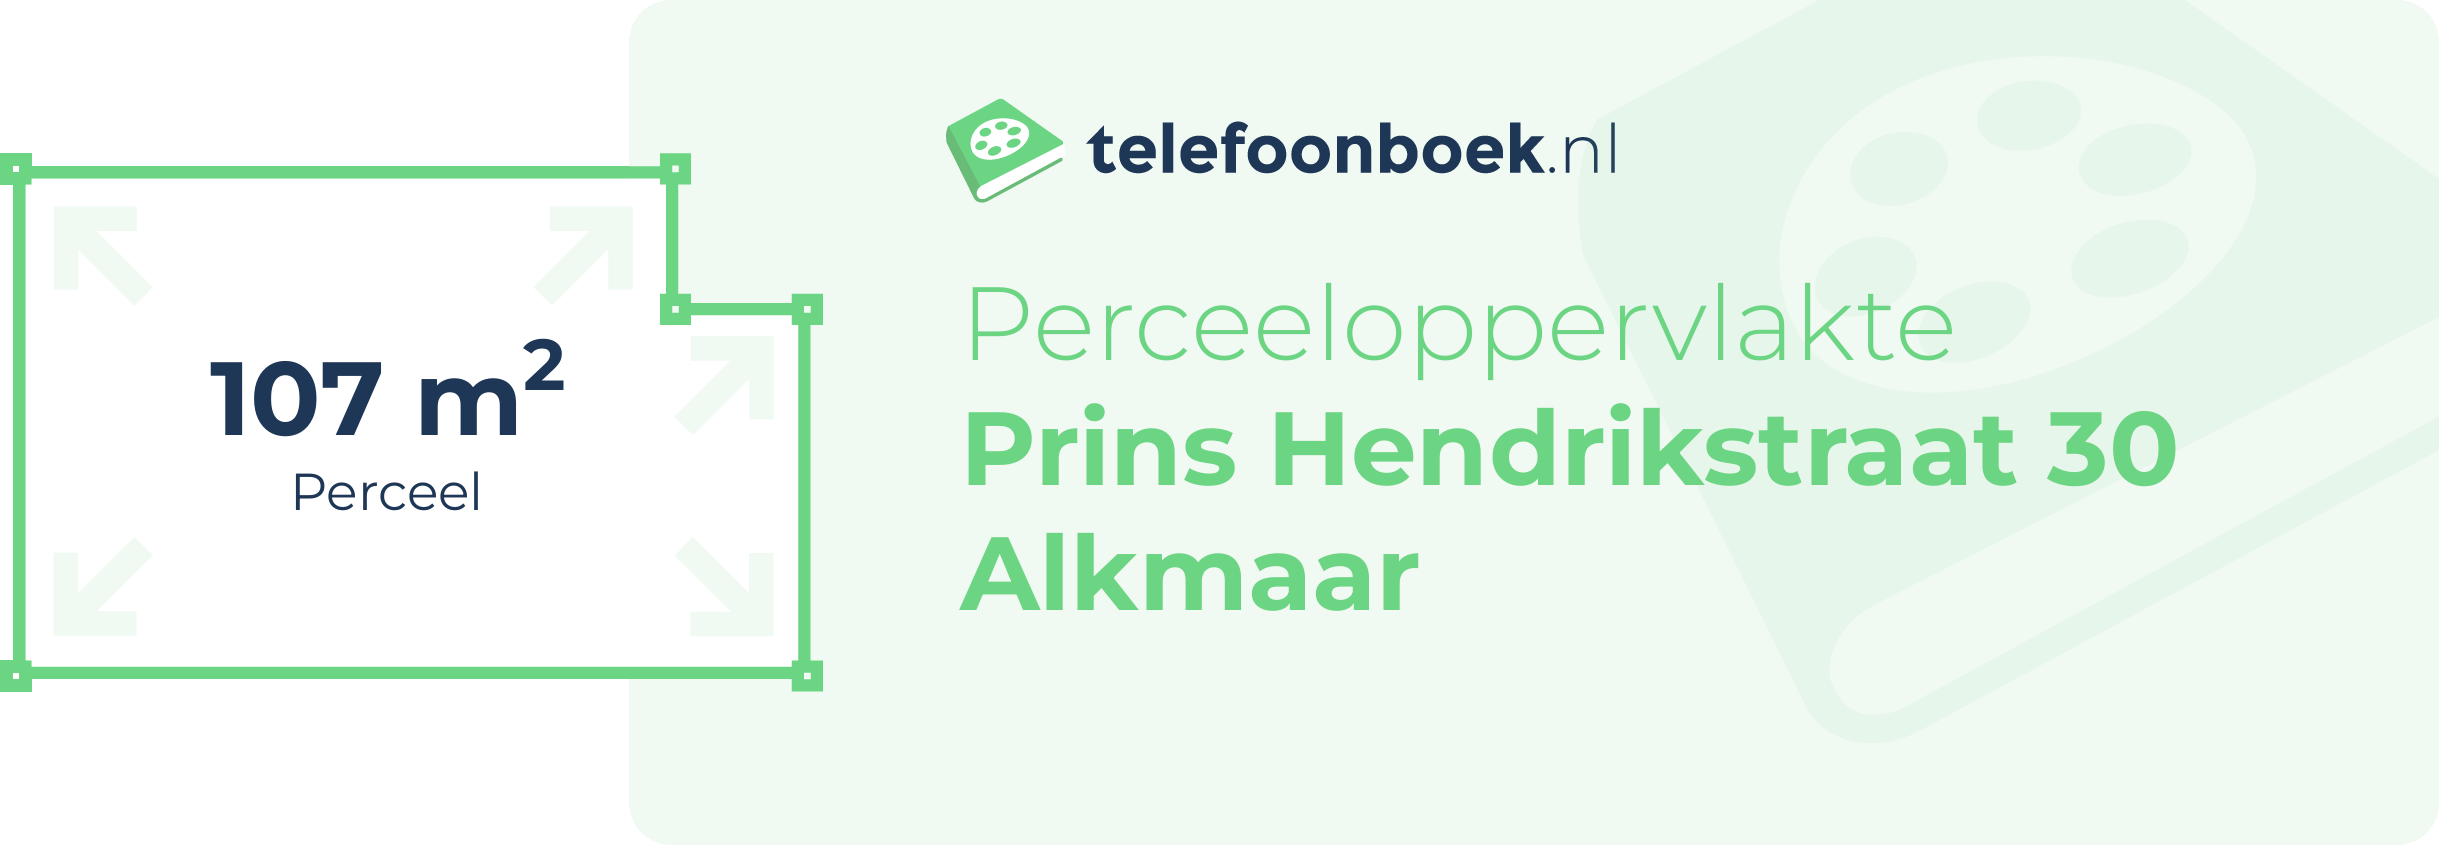 Perceeloppervlakte Prins Hendrikstraat 30 Alkmaar